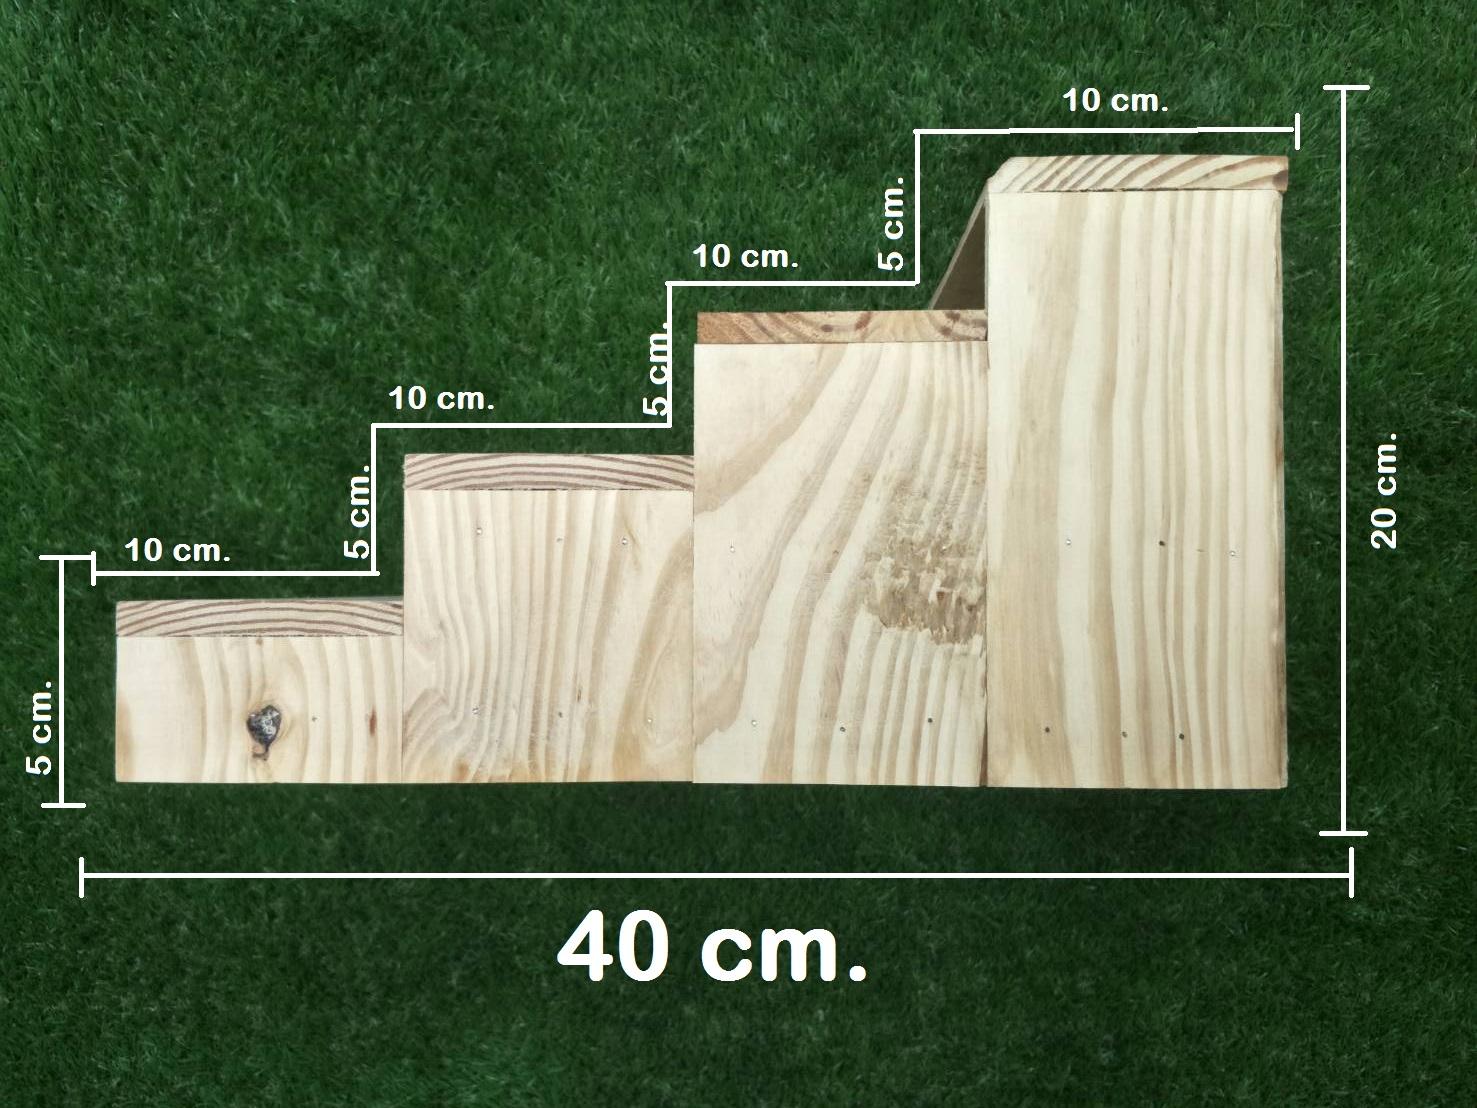 ชั้นวางของ ขั้นบันได 4 ขั้น (ยาว 50 cm.X กว้าง 40 cm.X สูง 20 cm.)